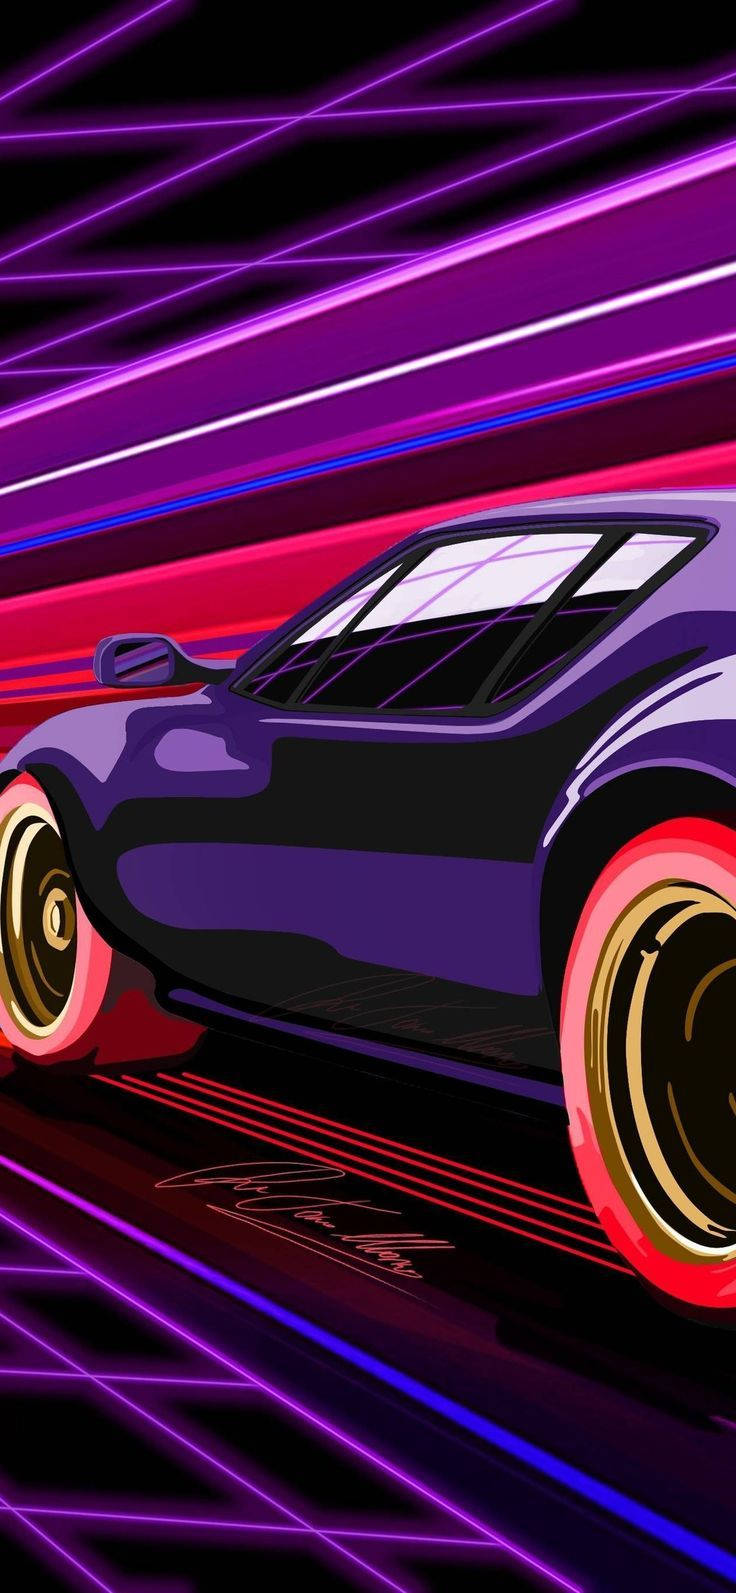 иллюстрация футуристического фиолетового автомобиля iphone